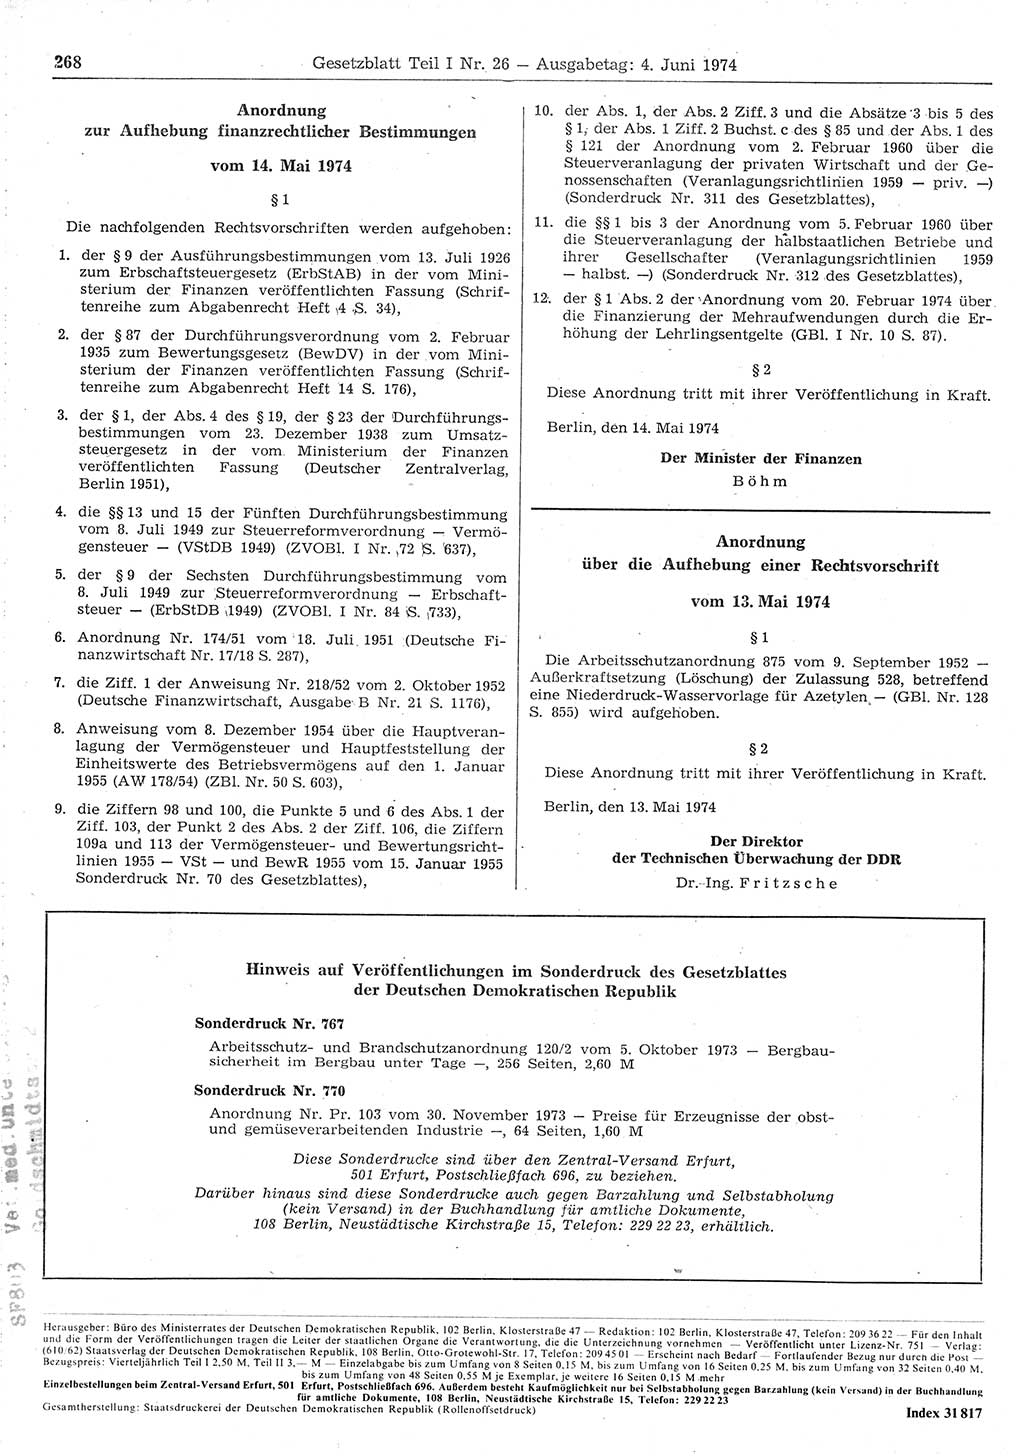 Gesetzblatt (GBl.) der Deutschen Demokratischen Republik (DDR) Teil Ⅰ 1974, Seite 268 (GBl. DDR Ⅰ 1974, S. 268)